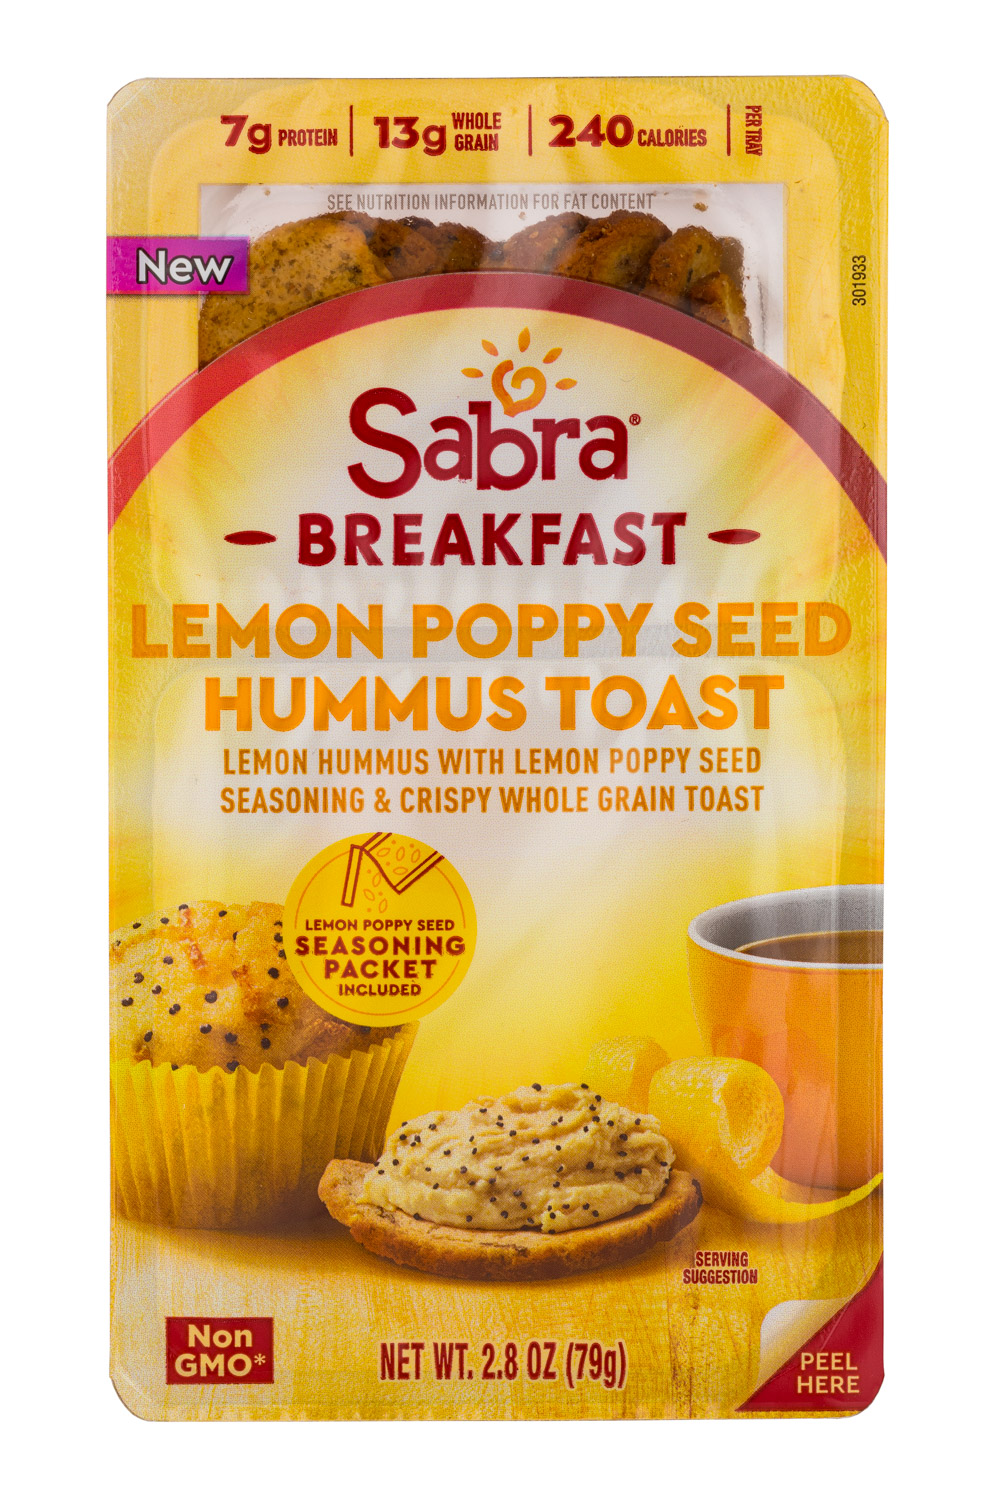 Lemon Poppy Seed Hummus Toast